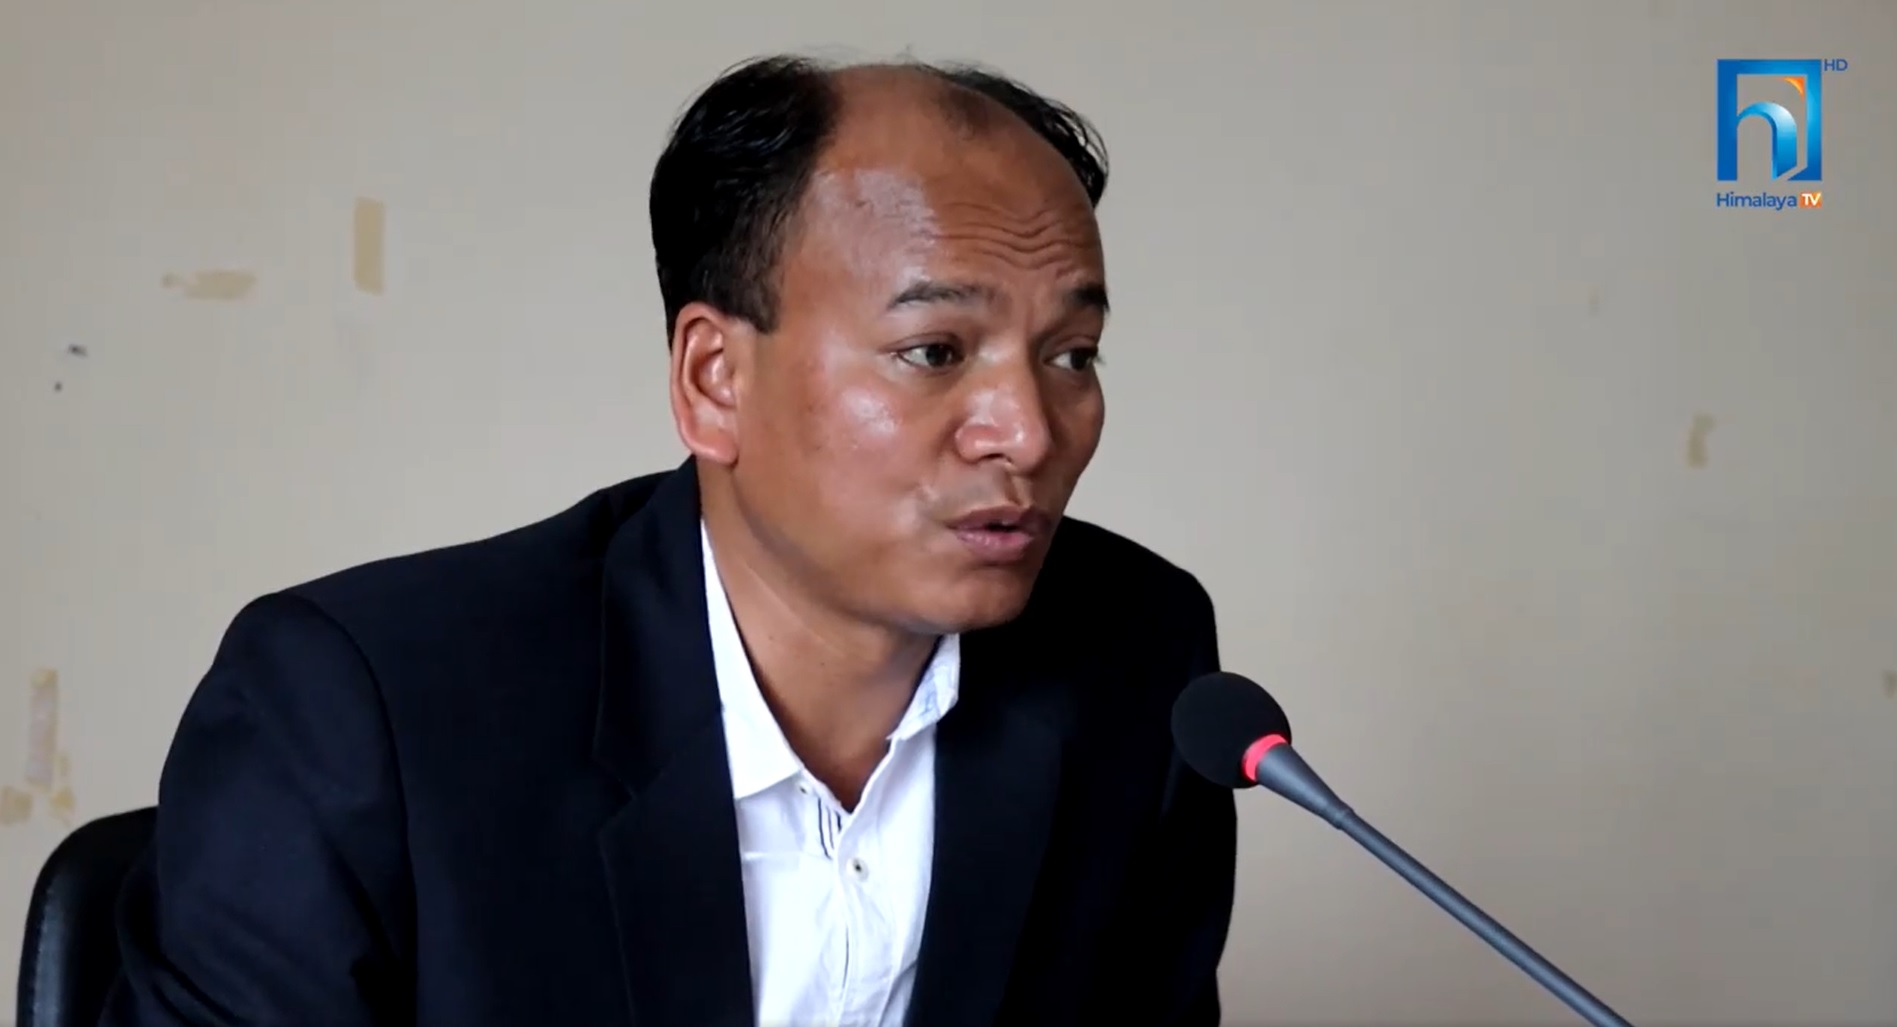 सिकलसेल रोग उन्मुलनका लागि लुम्बिनी सरकारले कार्यक्रम संचालन गर्ने (भिडियो रिपोर्टसहित)